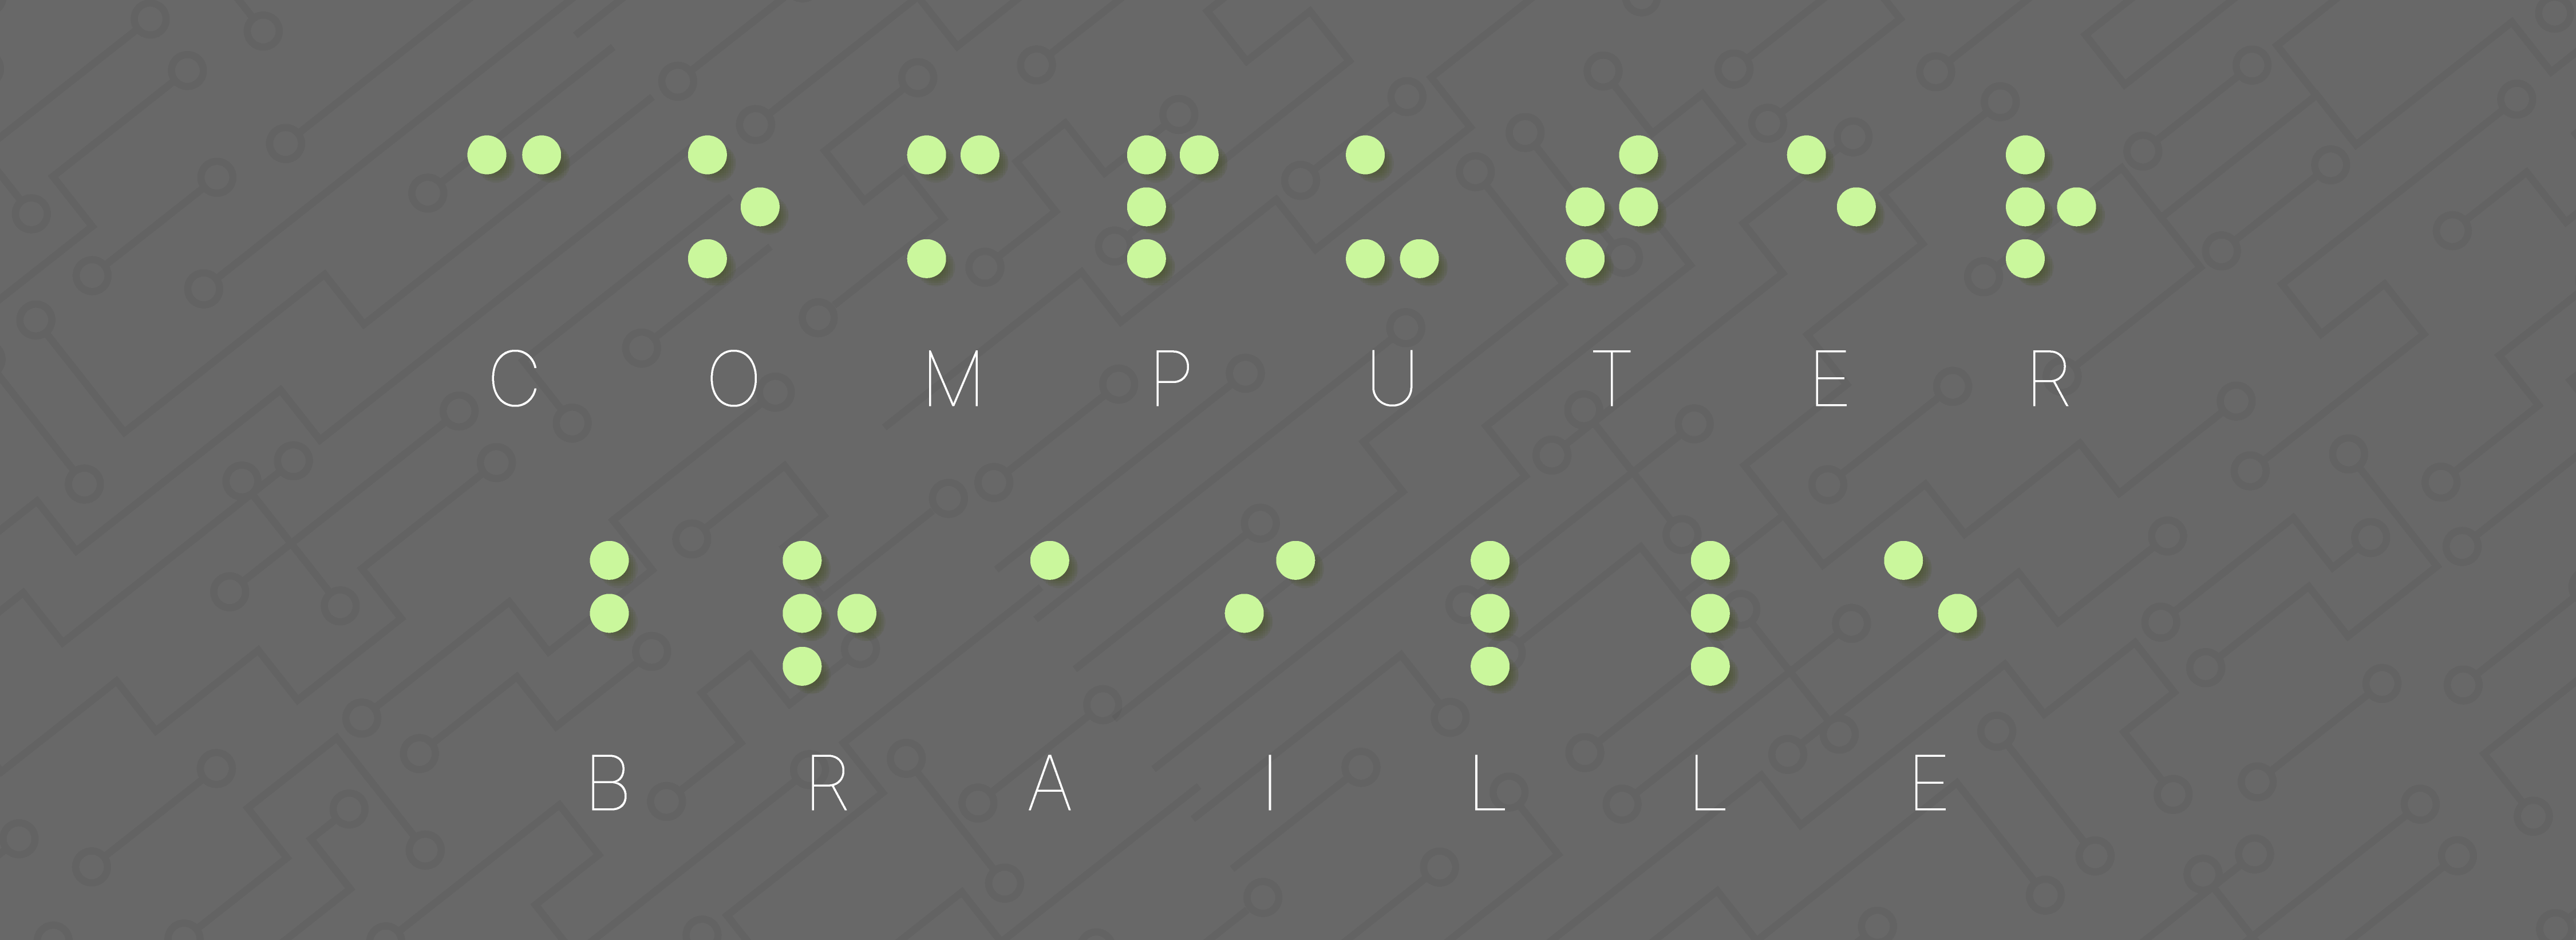 Grauer Untergrund. Im Braille-Schrift steht das Wort: Computerbraille. Unter jeder Punktkombination steht der entsprechende Buchstabe in Schwarzschrift. 